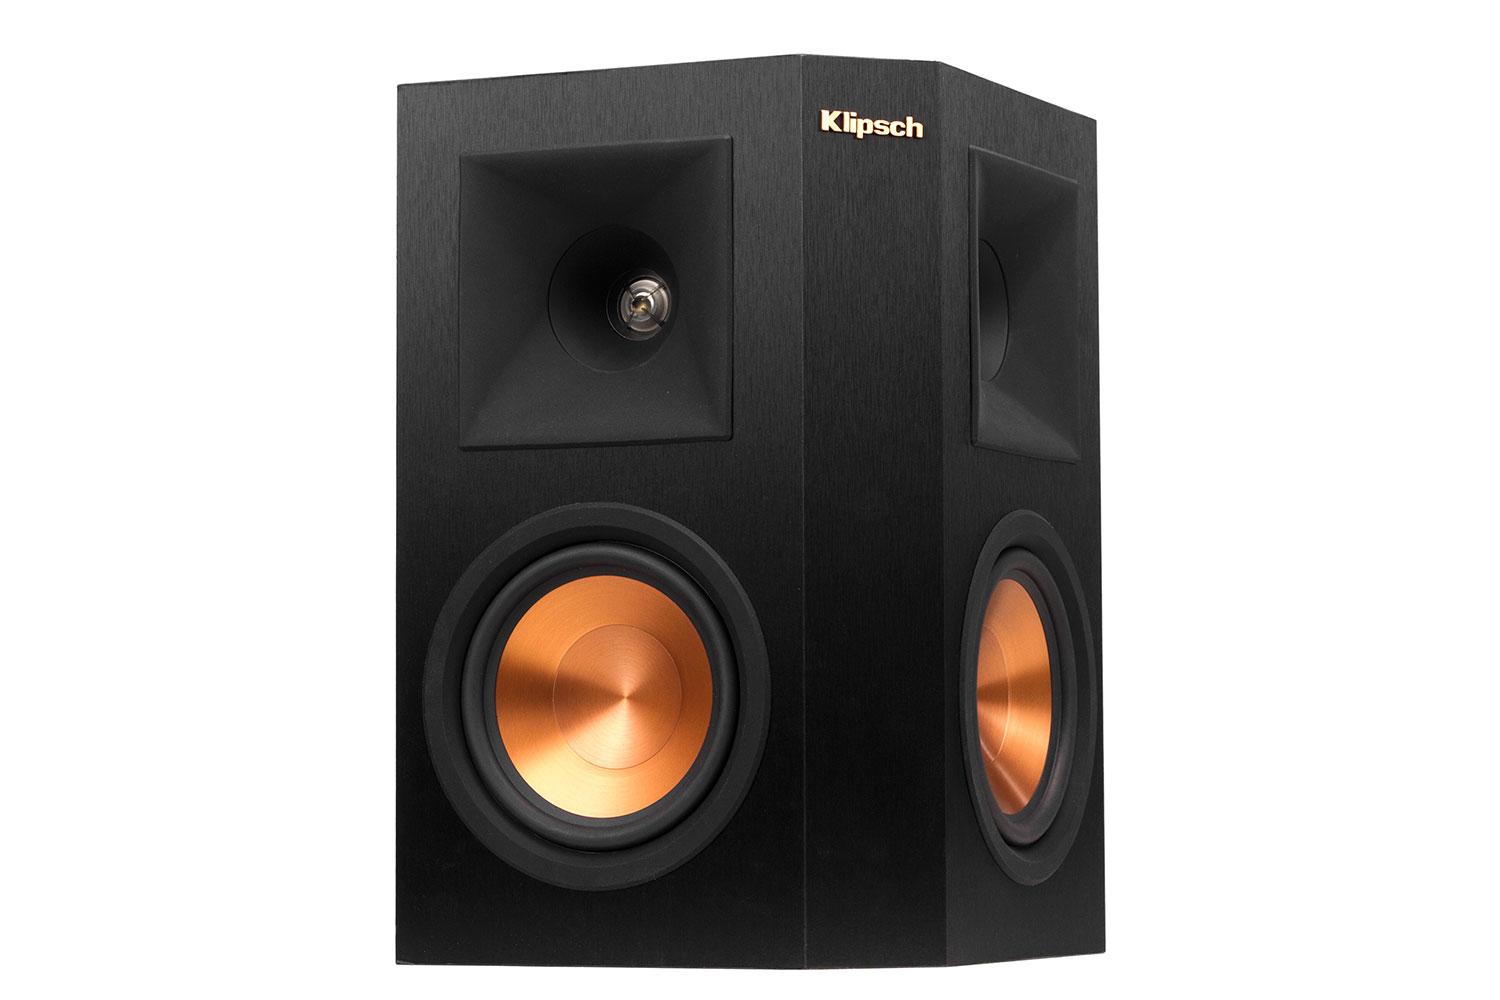 klipsch reference premier speaker system debuts at ces 2015 250s